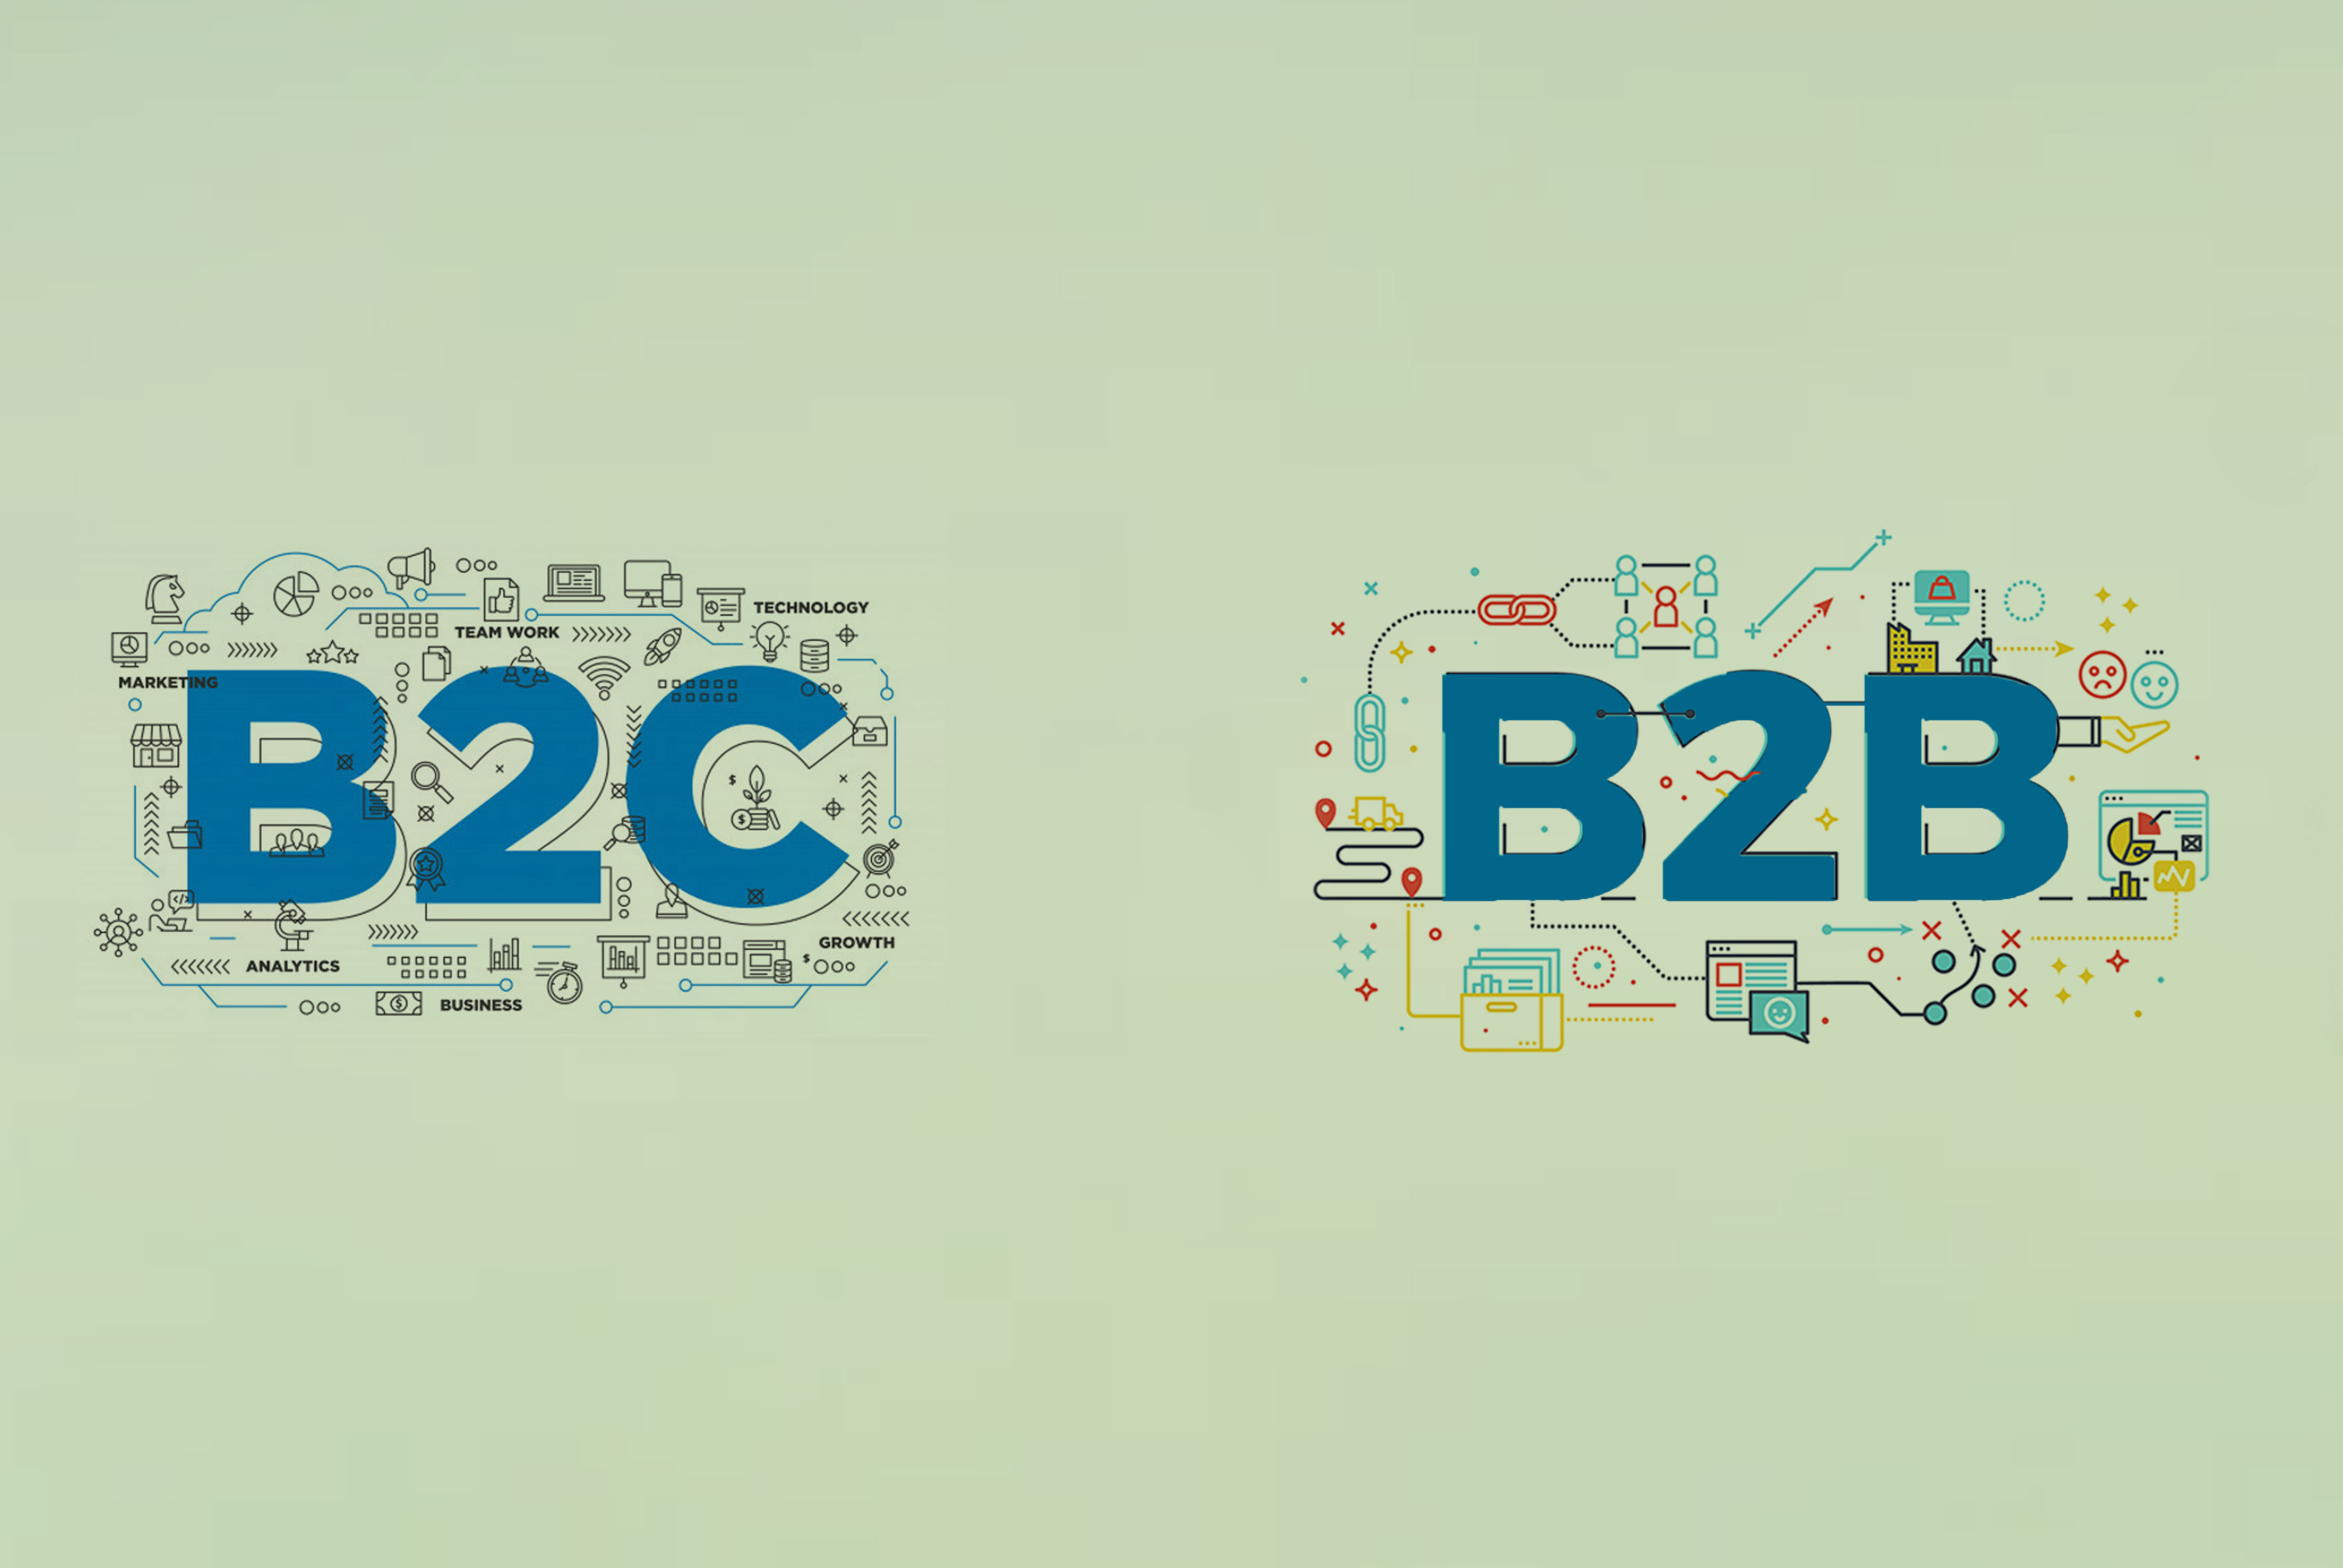 مدل تجاری استارتاپ B2B باشد یا B2C؟